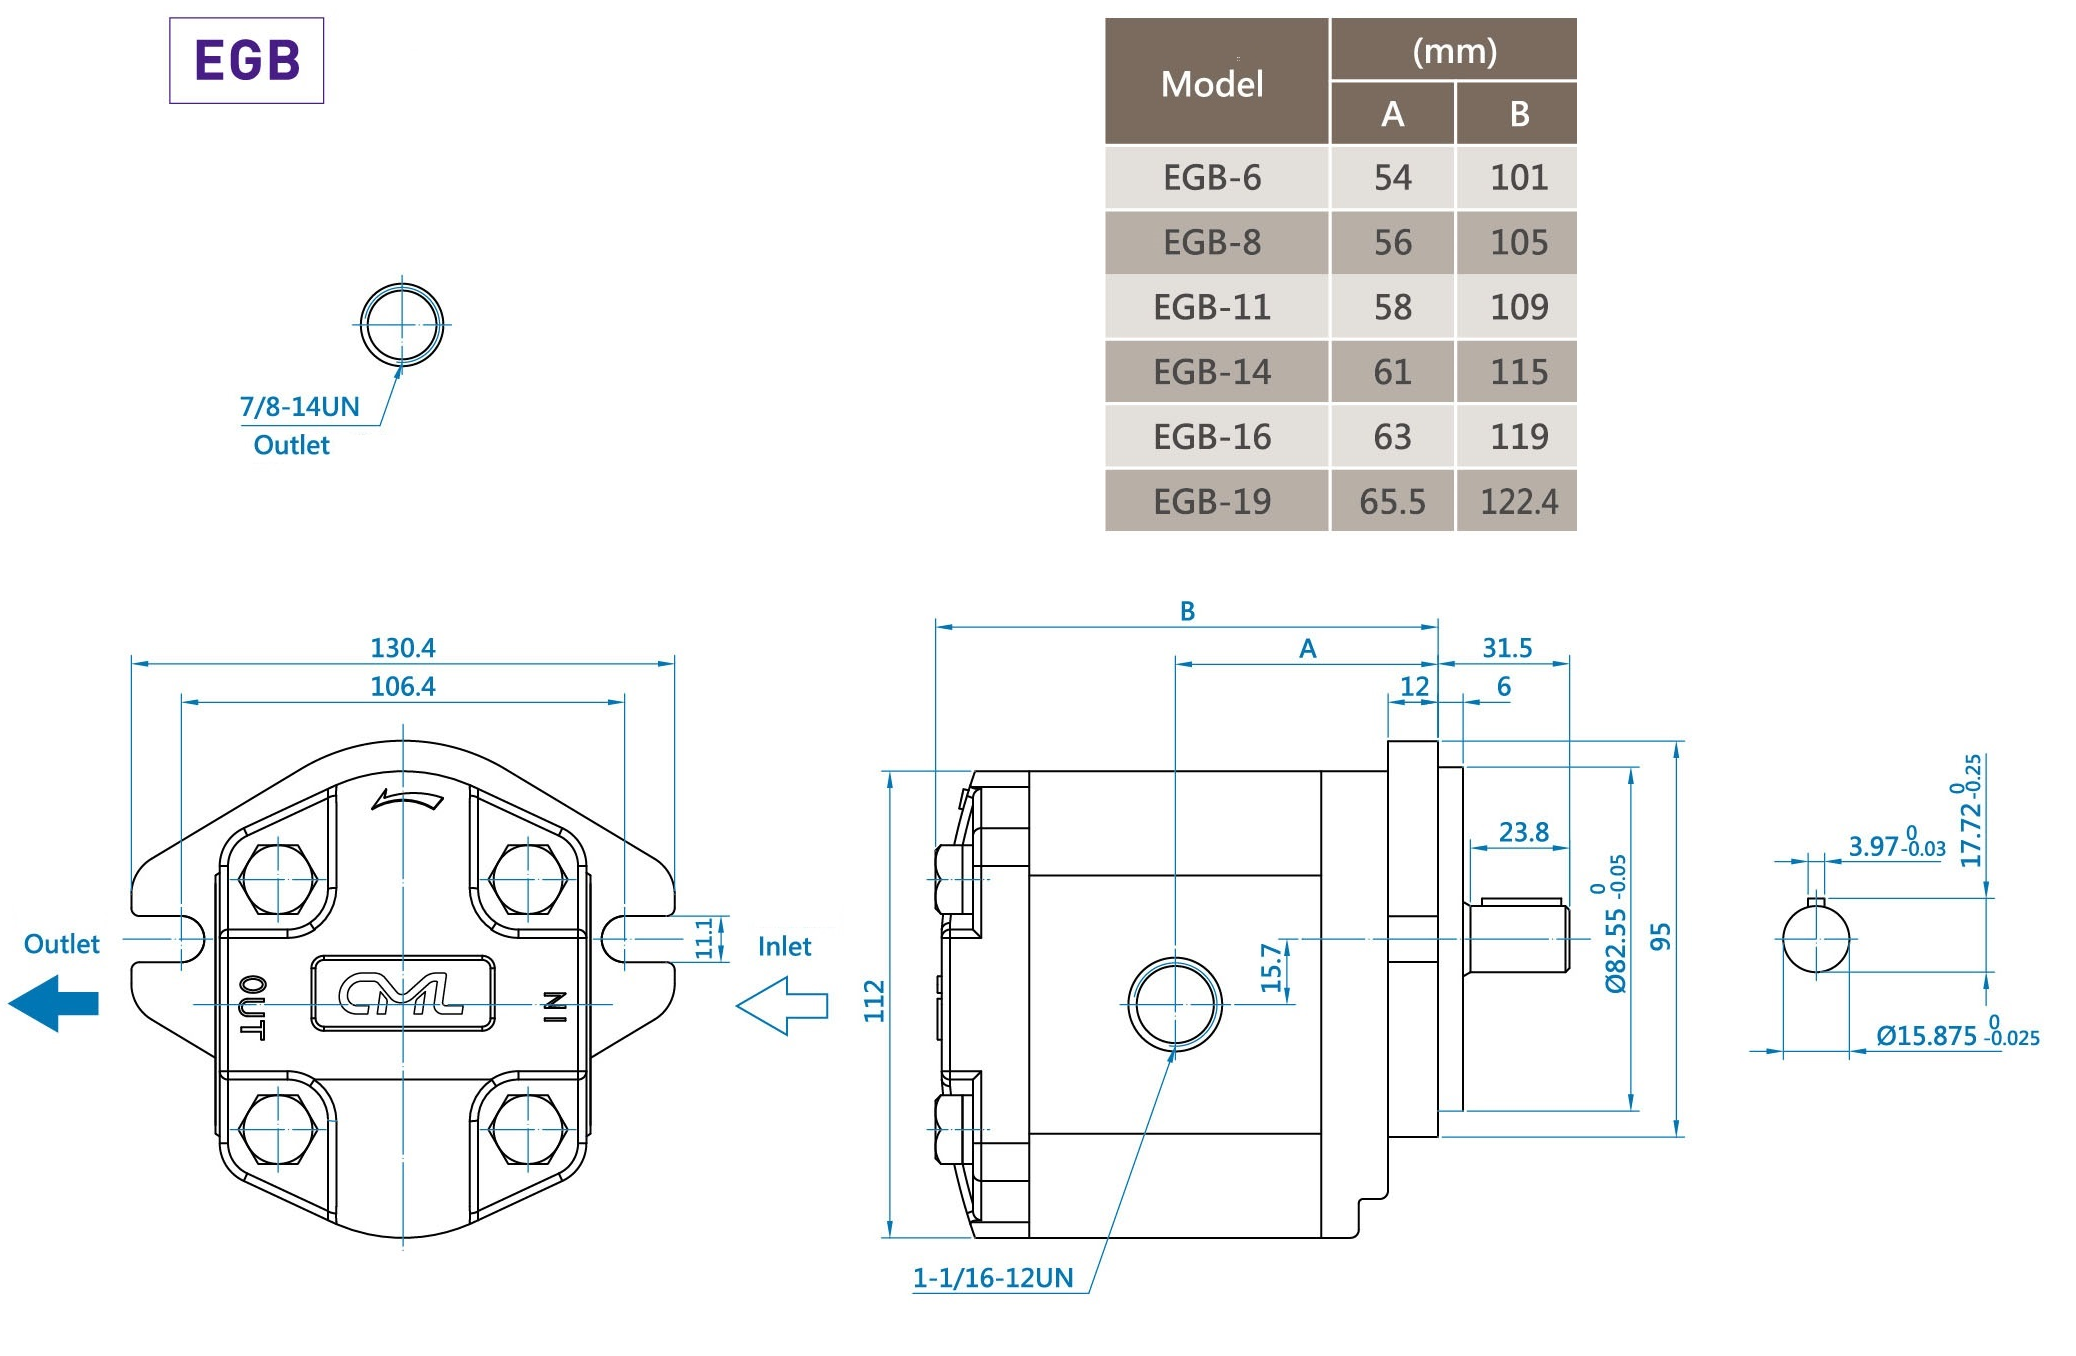 CML Pompa a ingranaggi esterni Serie B a basso rumore Misurazione, dimensioni, diagramma